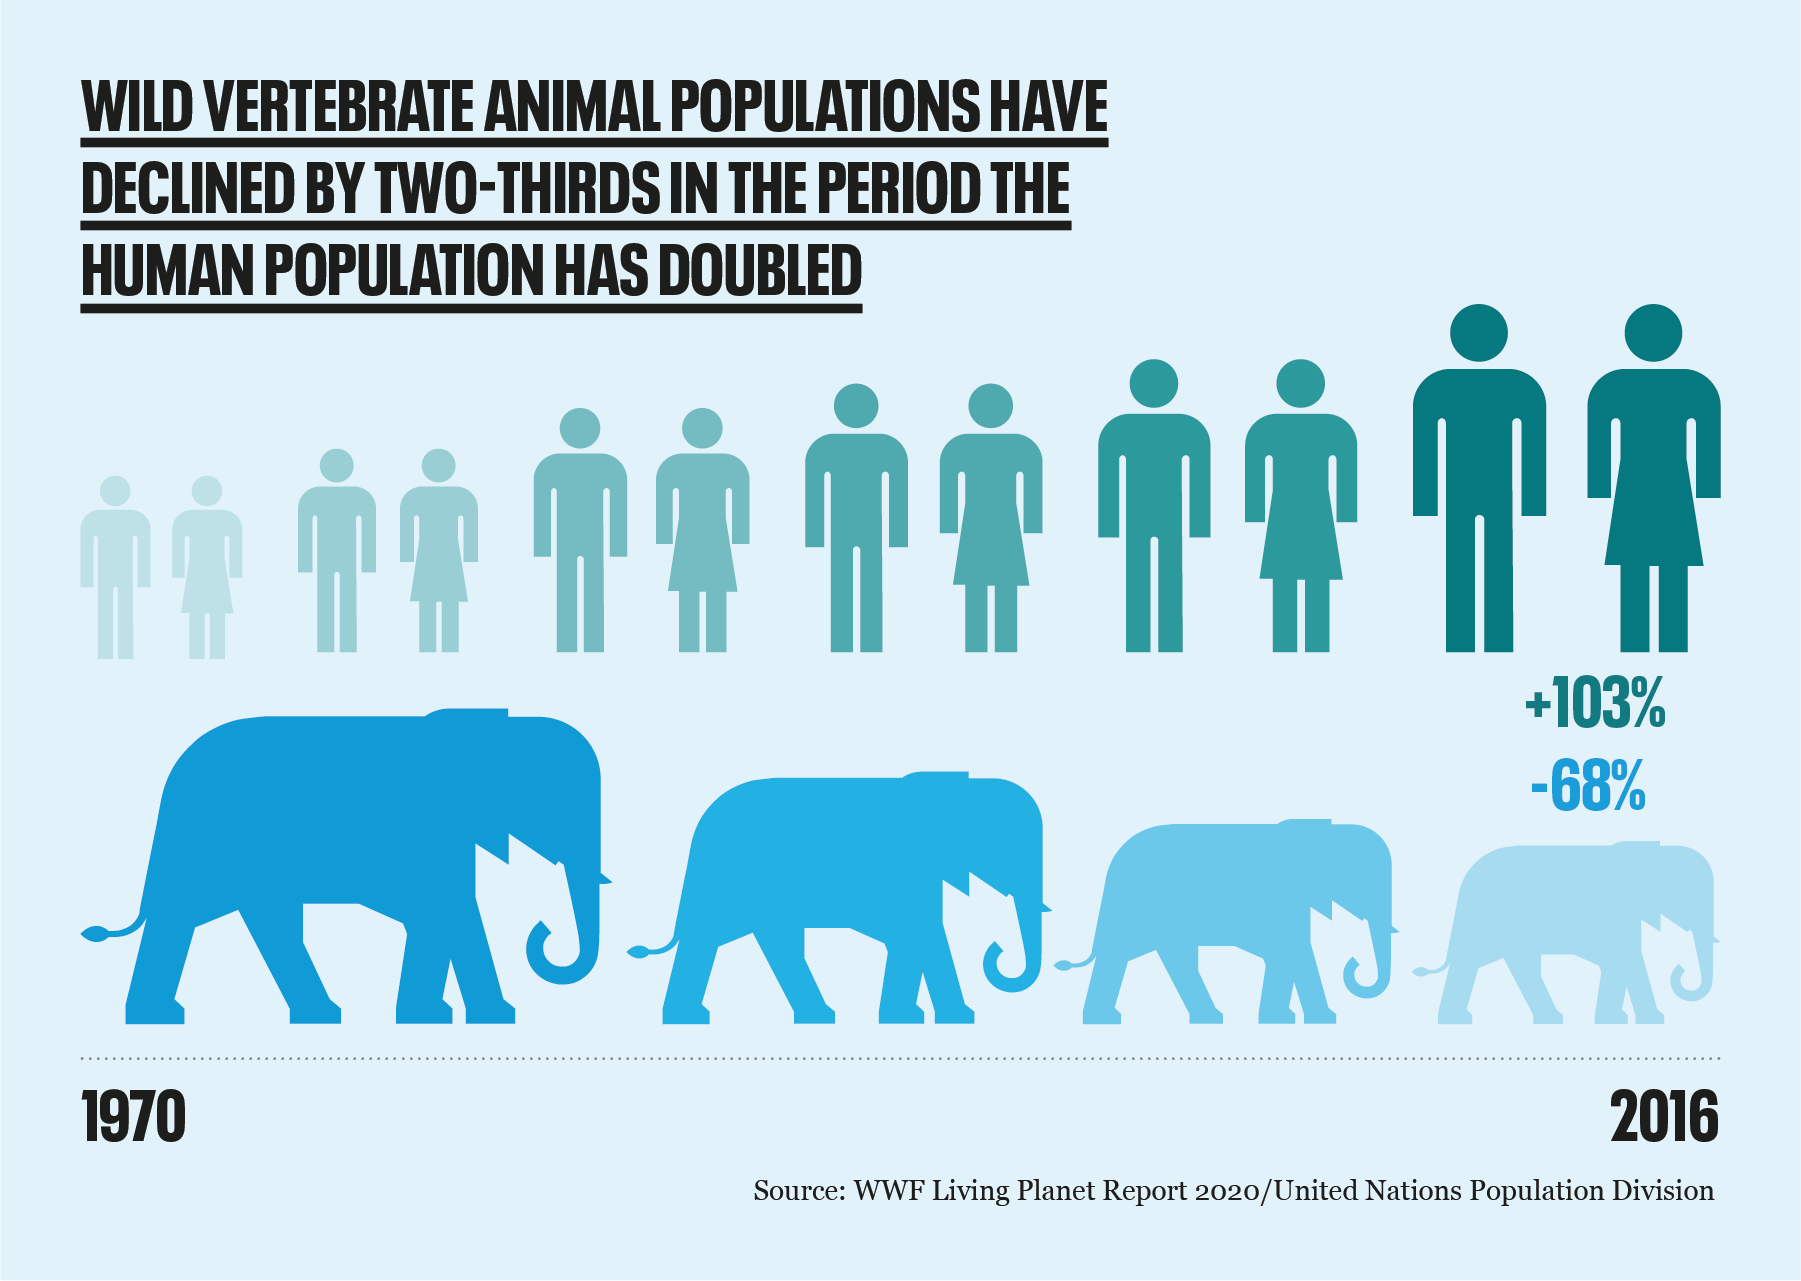 Vertebrate wildlife population decline since 1970